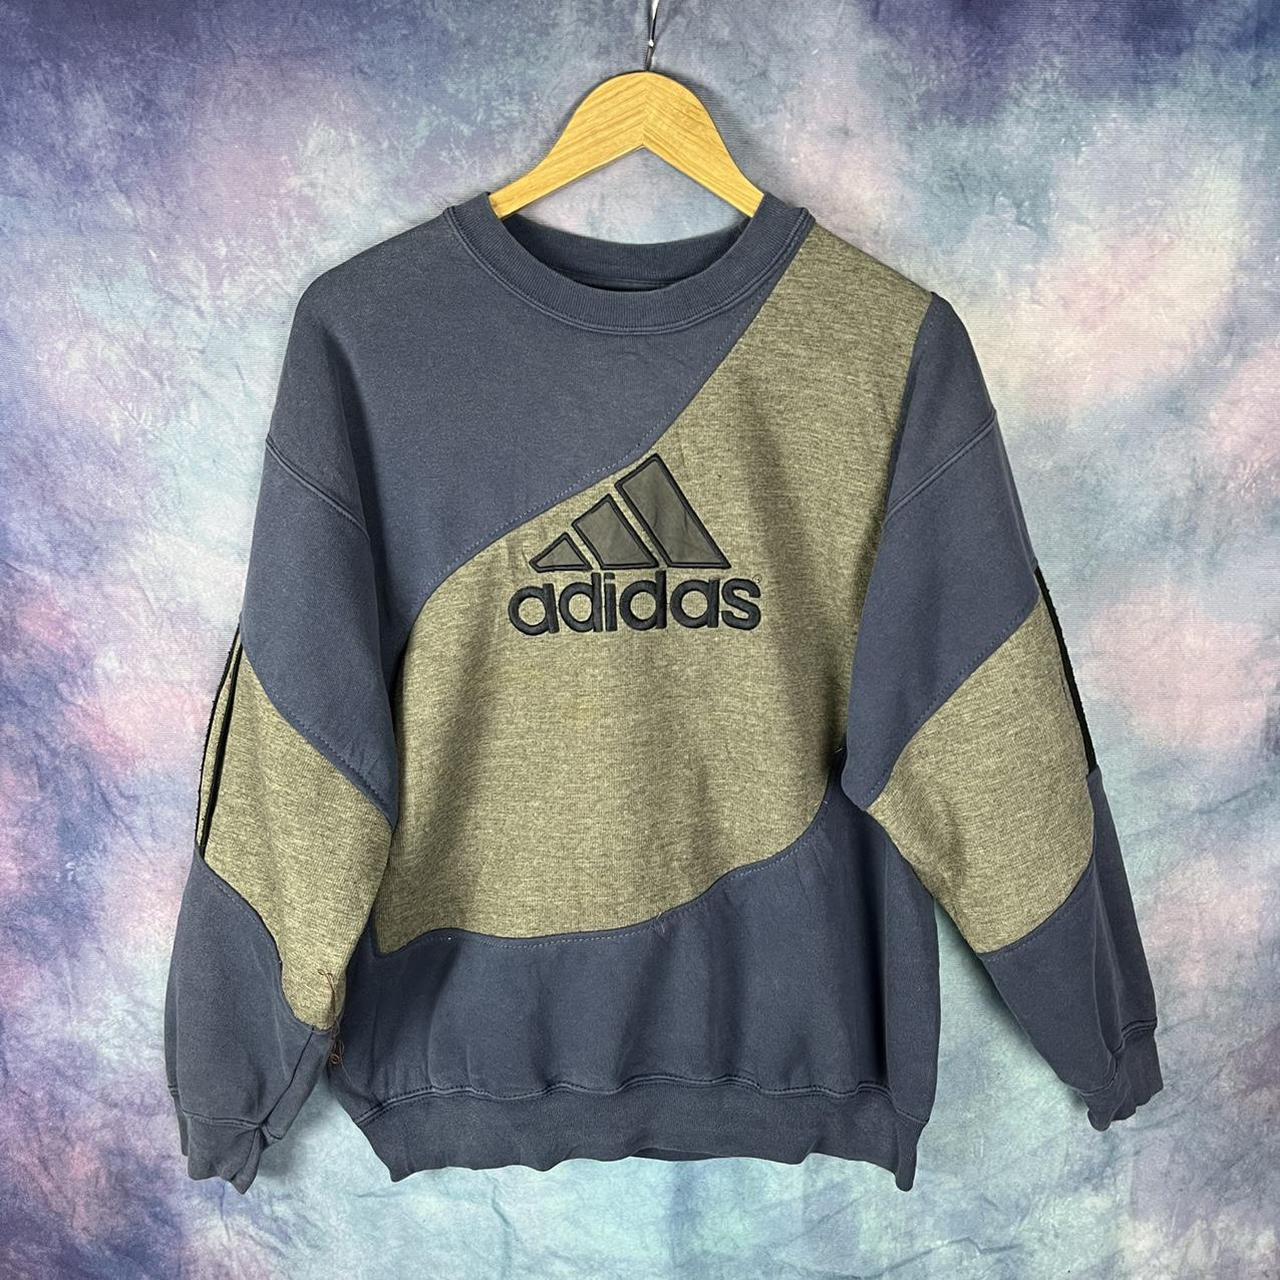 Vintage Adidas equipment sweatshirt reworked mens... - Depop